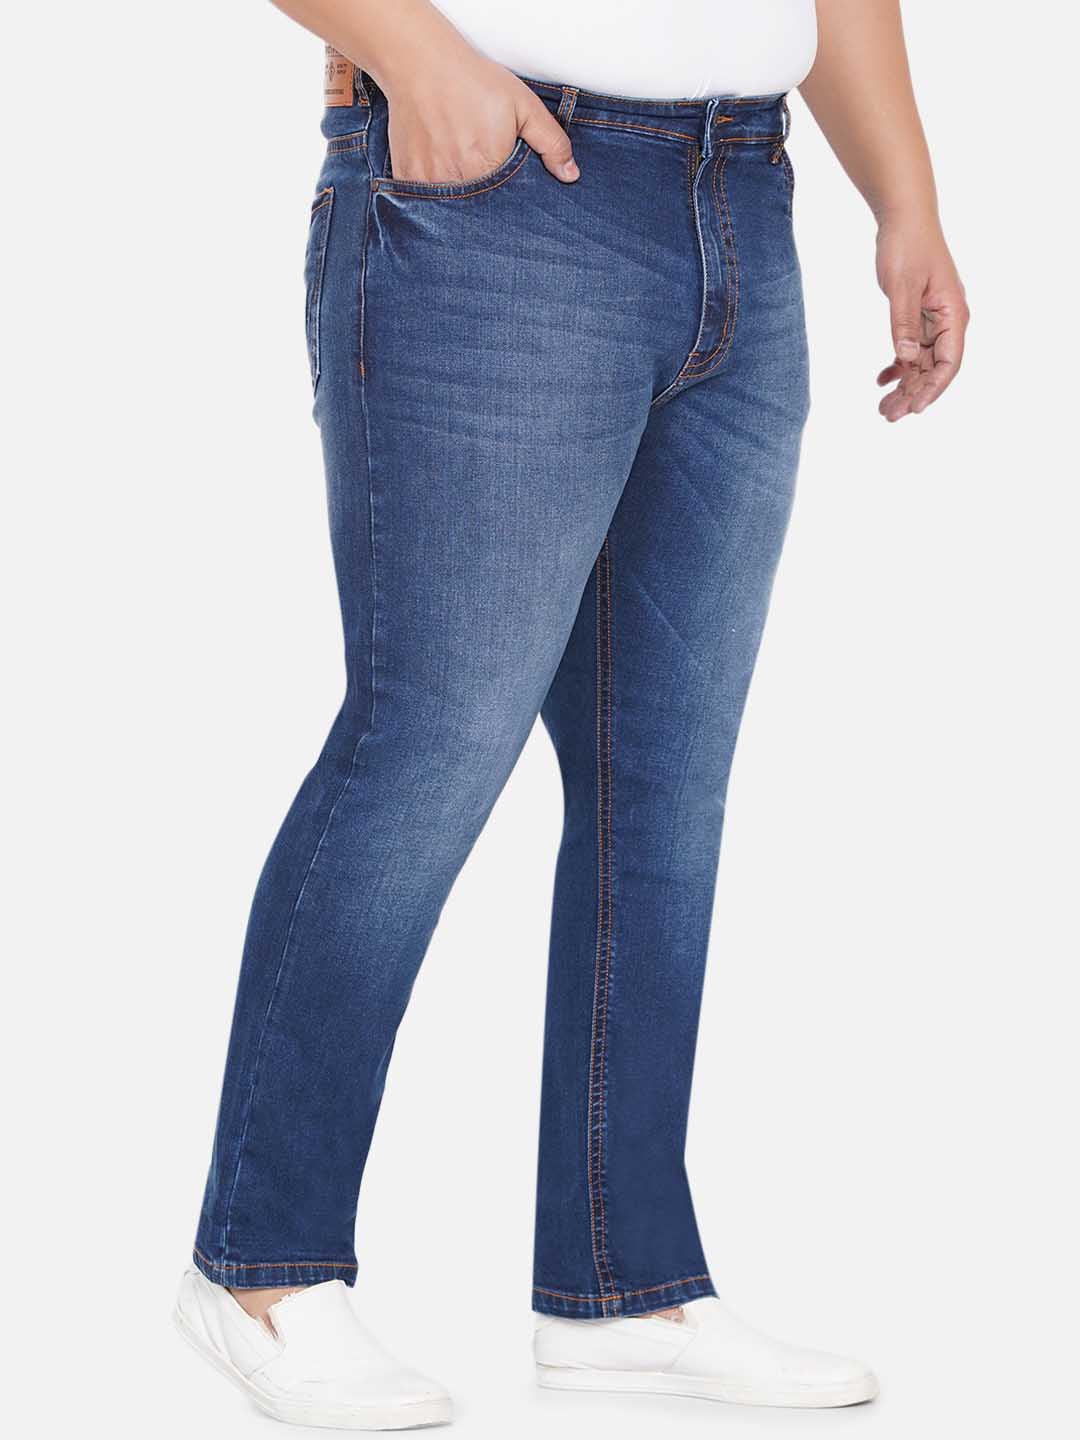 bottomwear/jeans/JPJ12238/jpj12238-3.jpg